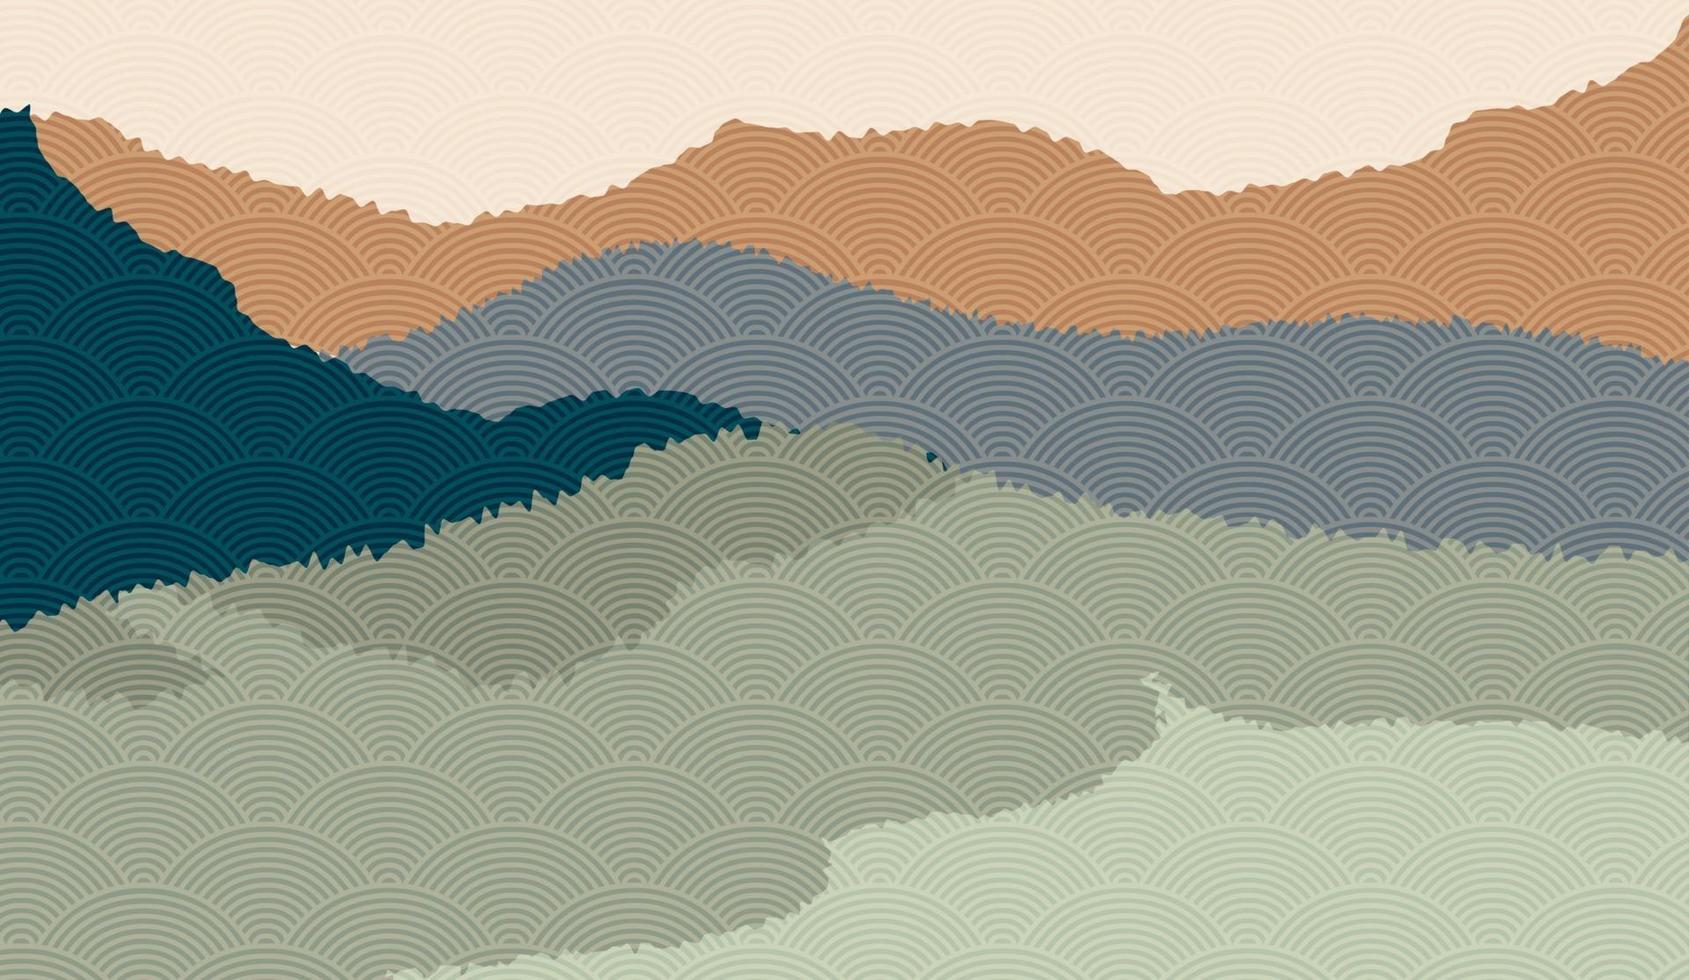 landschapsachtergrond met berglandschap versierd met Japans golfpatroon. vectorillustratie van reis- en avontuurthema met abstract natuurlandschap vector